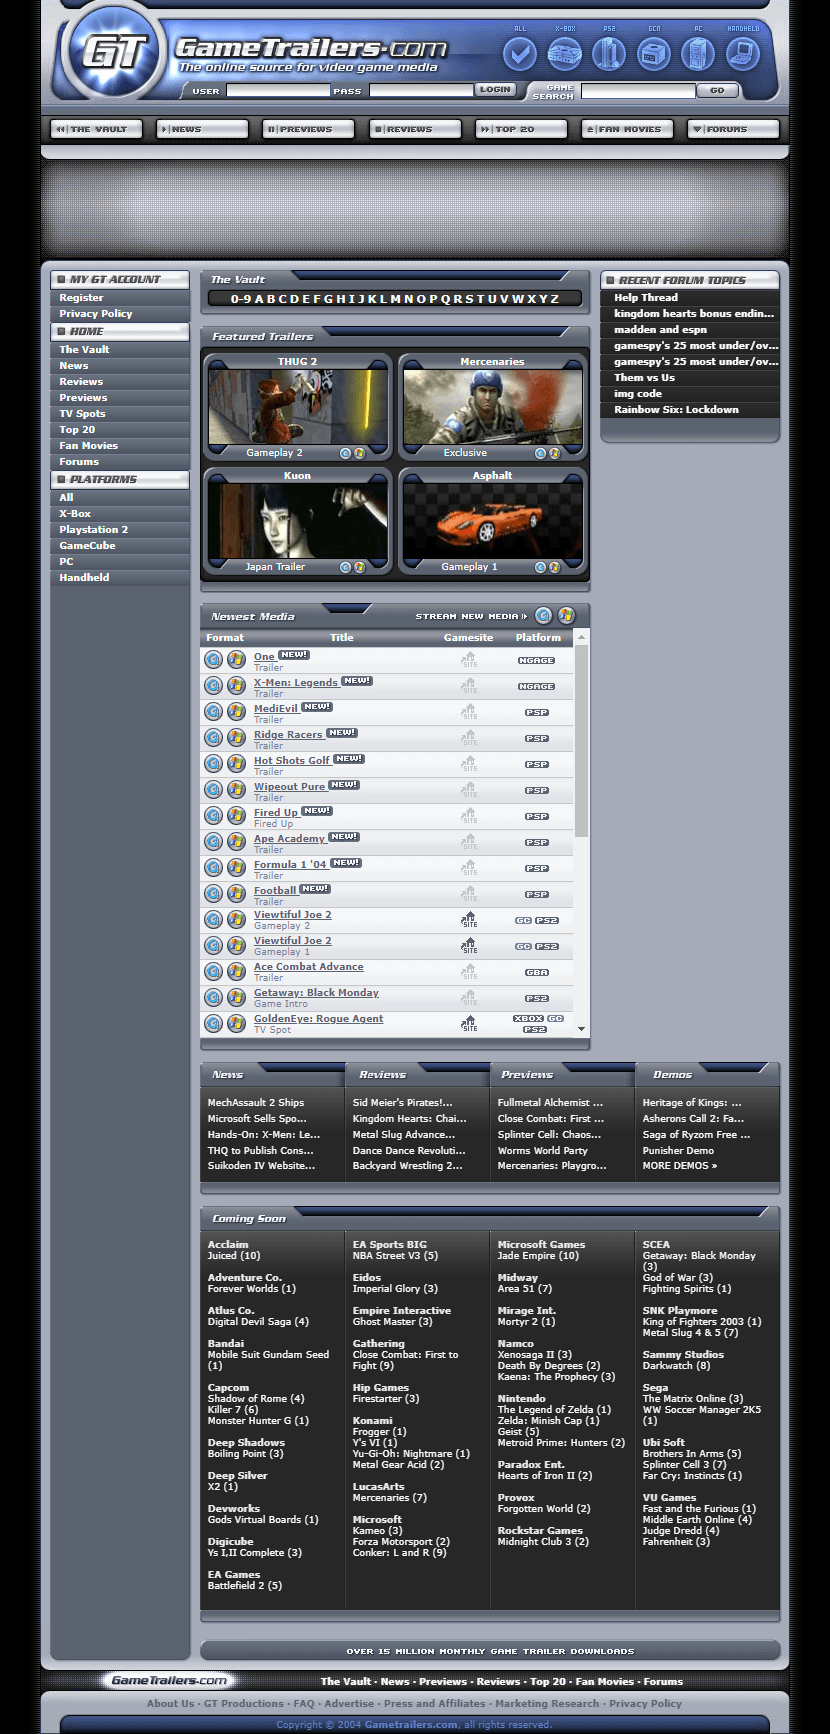 GameTrailers website in 2004